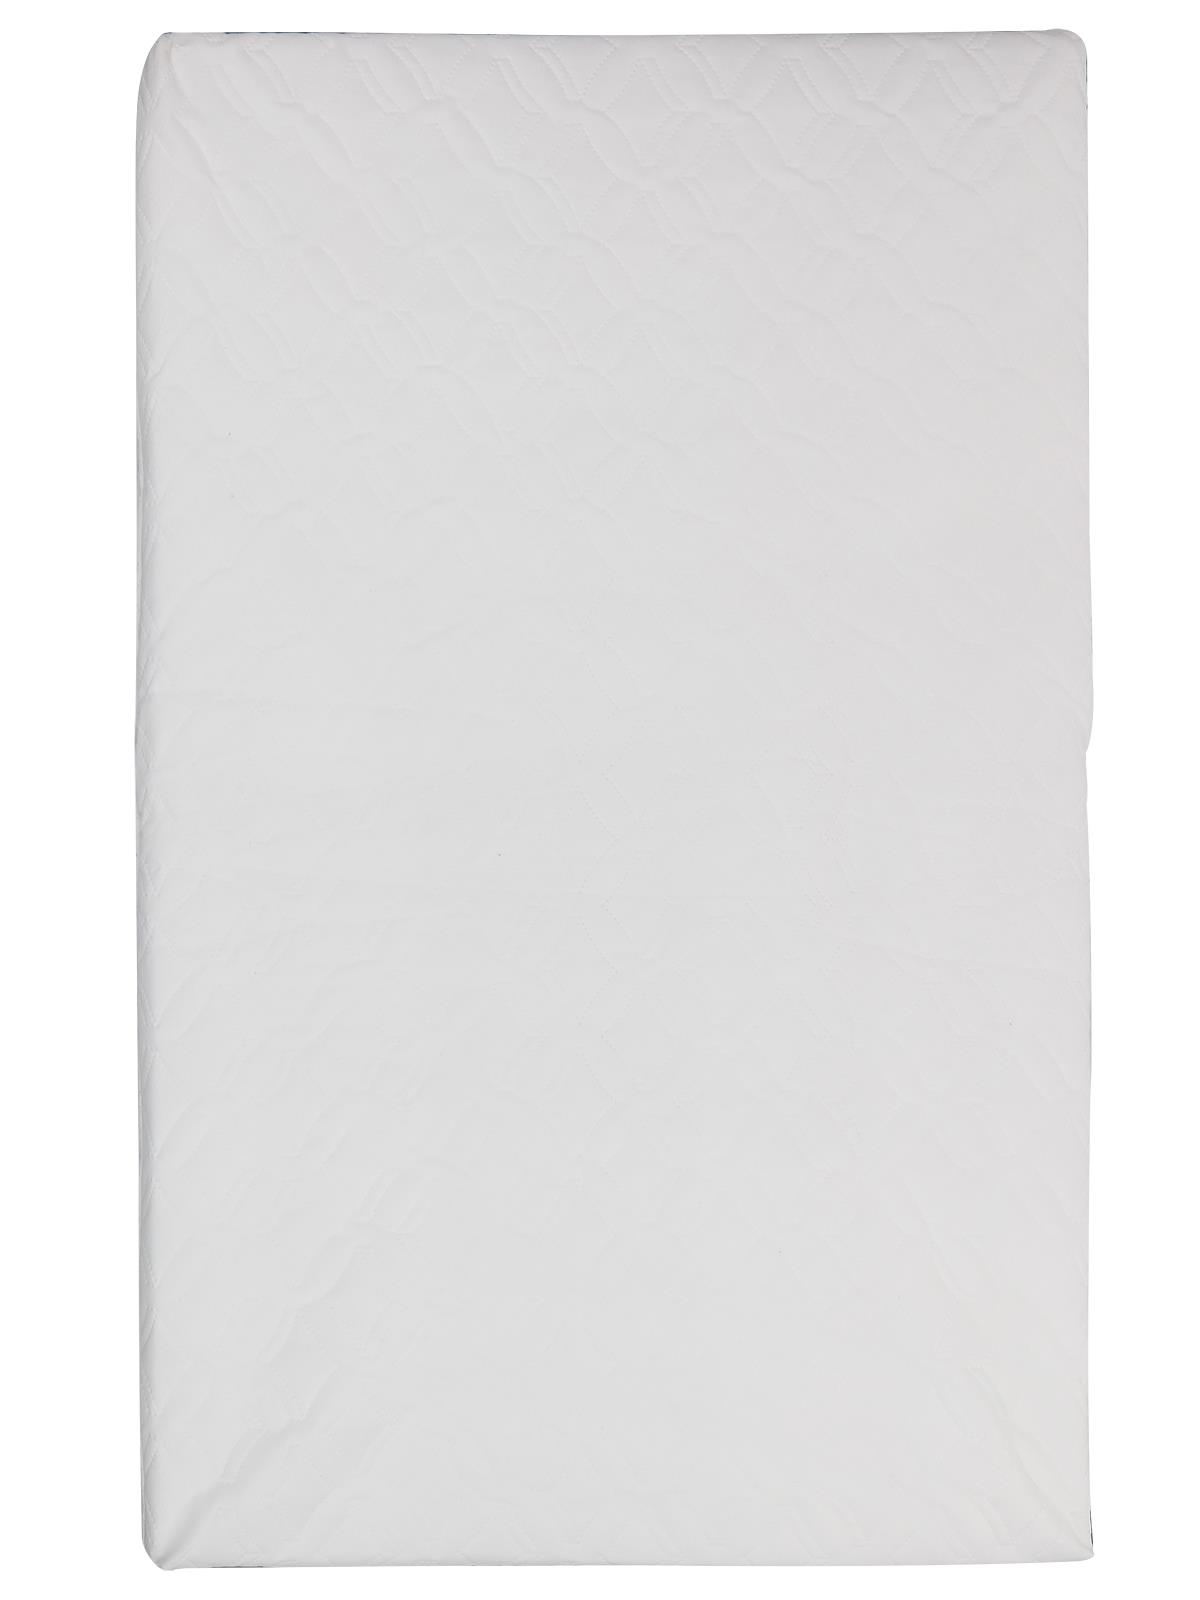 Keremce Pamuk Oyun Parkı Yatağı 70x110 cm Beyaz